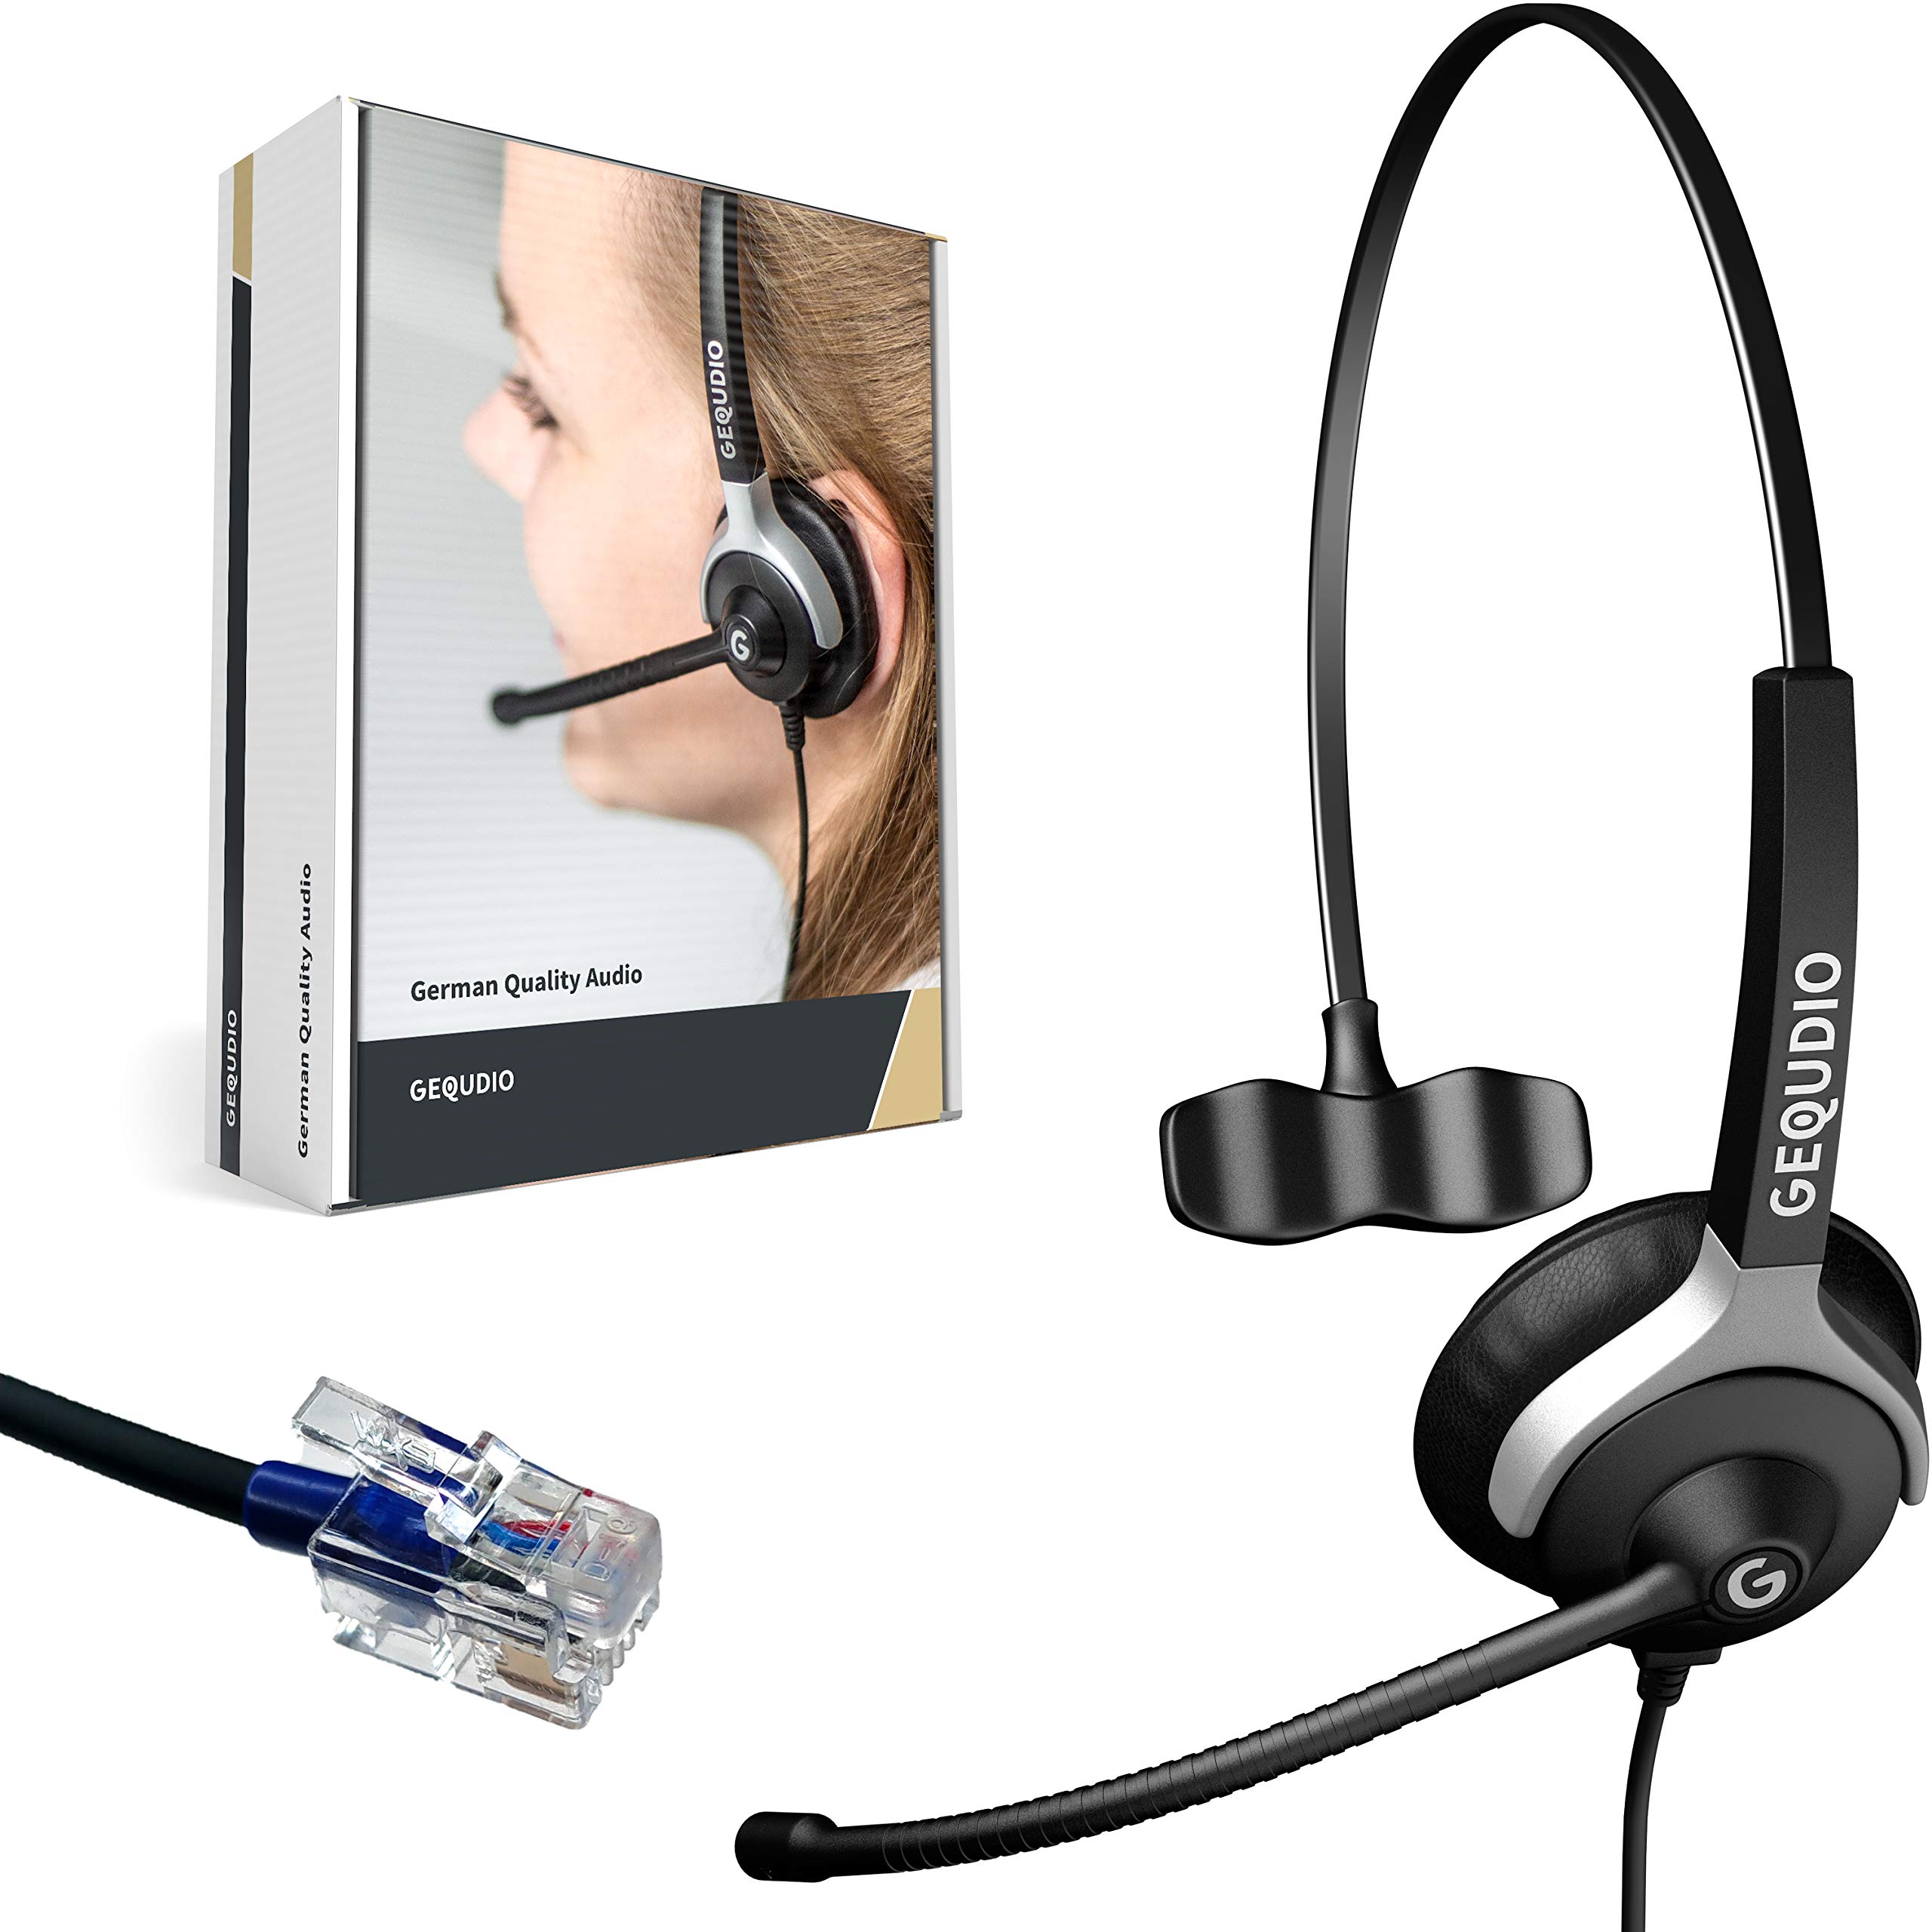 GEQUDIO Headset kompatibel mit Cisco Telefon - inklusive RJ Kabel - Kopfhörer & Mikrofon mit Ersatz Polster - Anschlusskabel flexibel wechselbar - besonders leicht 60g (1-Ohr)